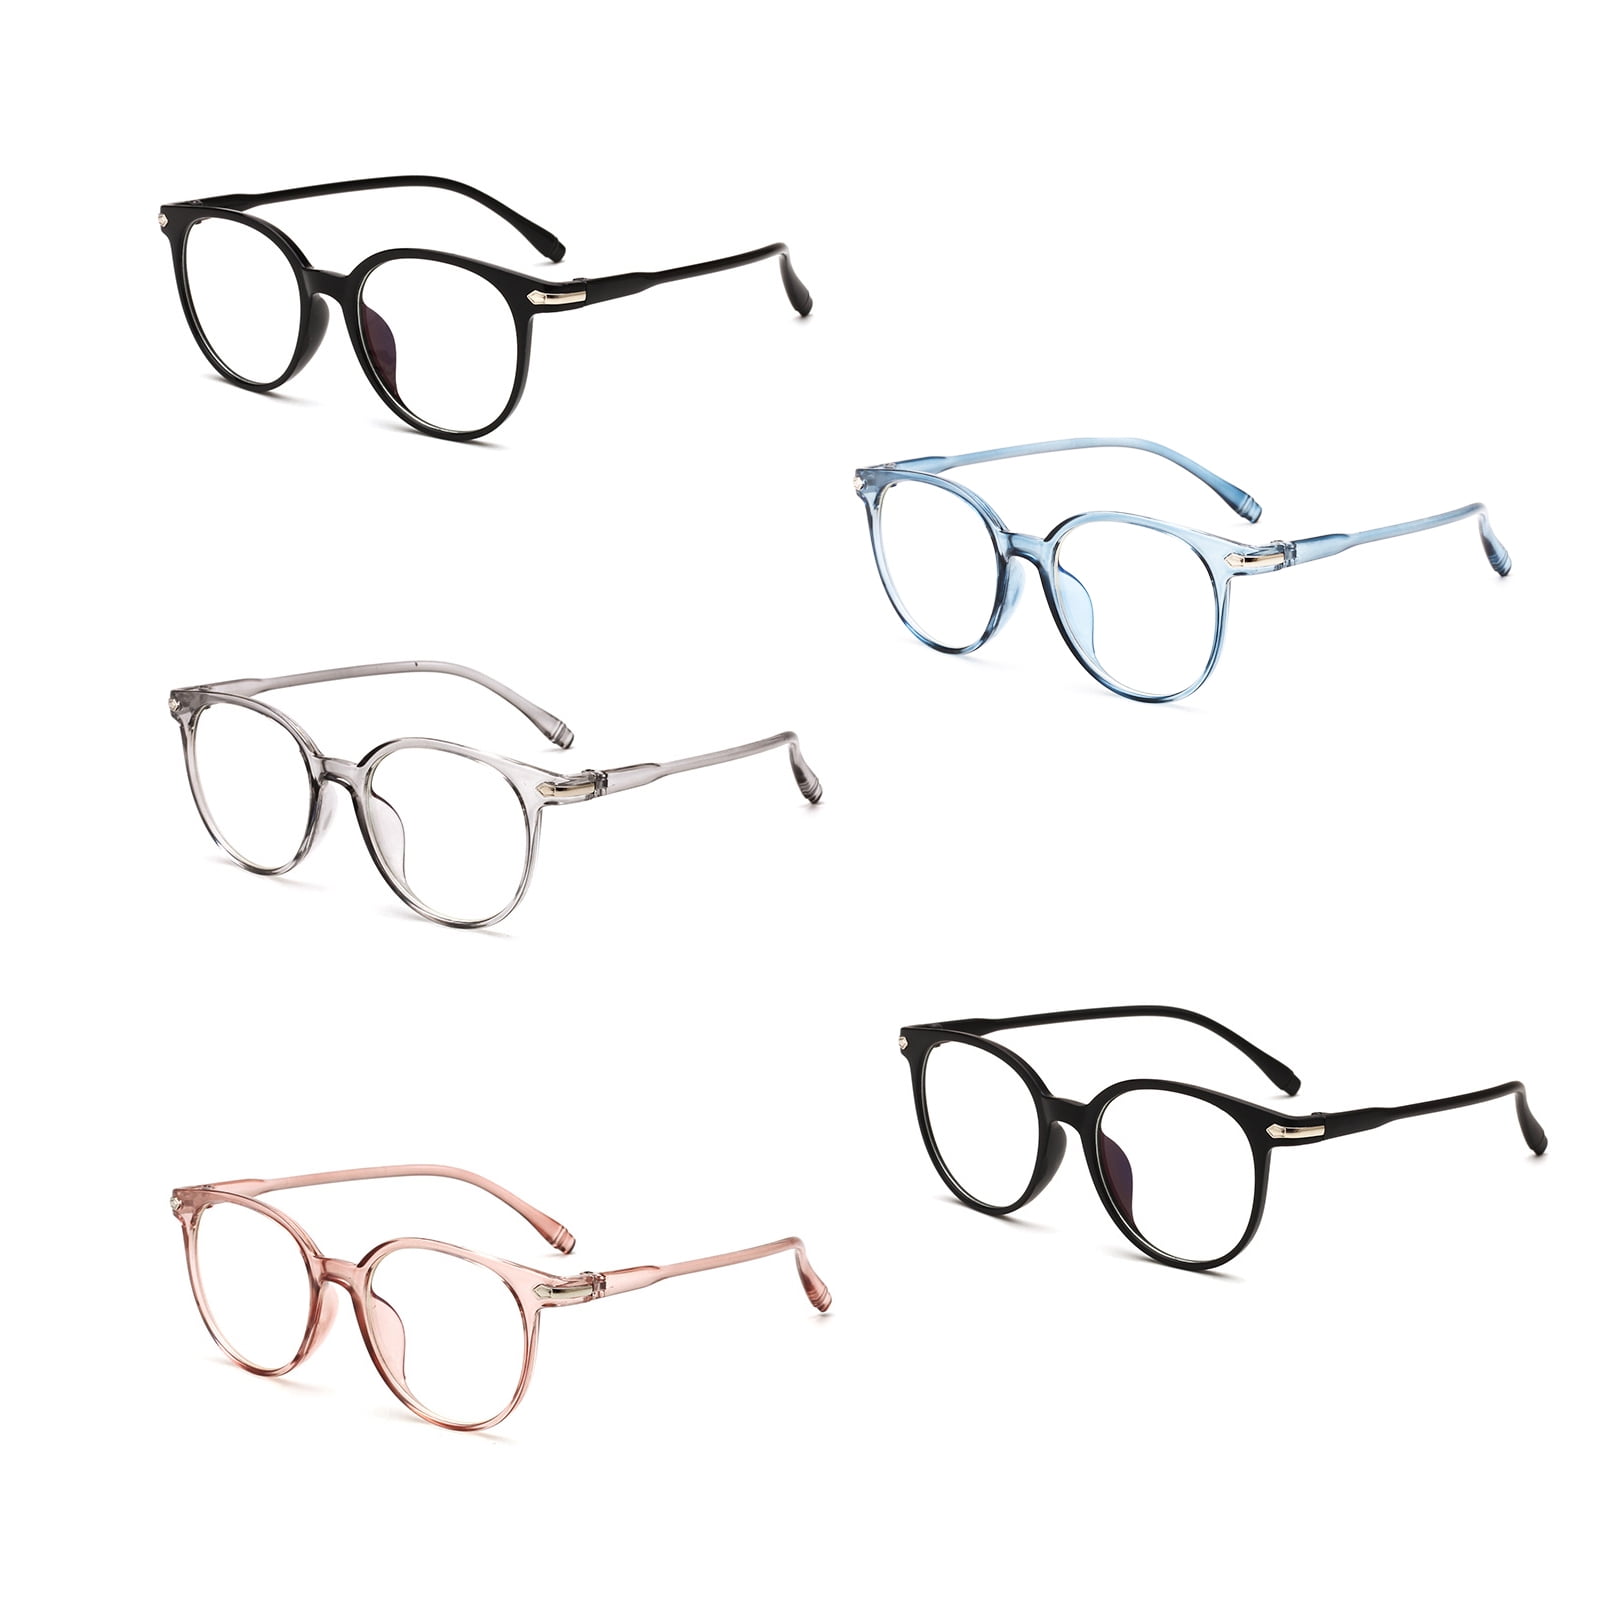 Poxas Blue Light Blocking Glasses Anti Eyestrain UV Filter Lens Computer Glasses Gaming Eyewear for Women/Men 